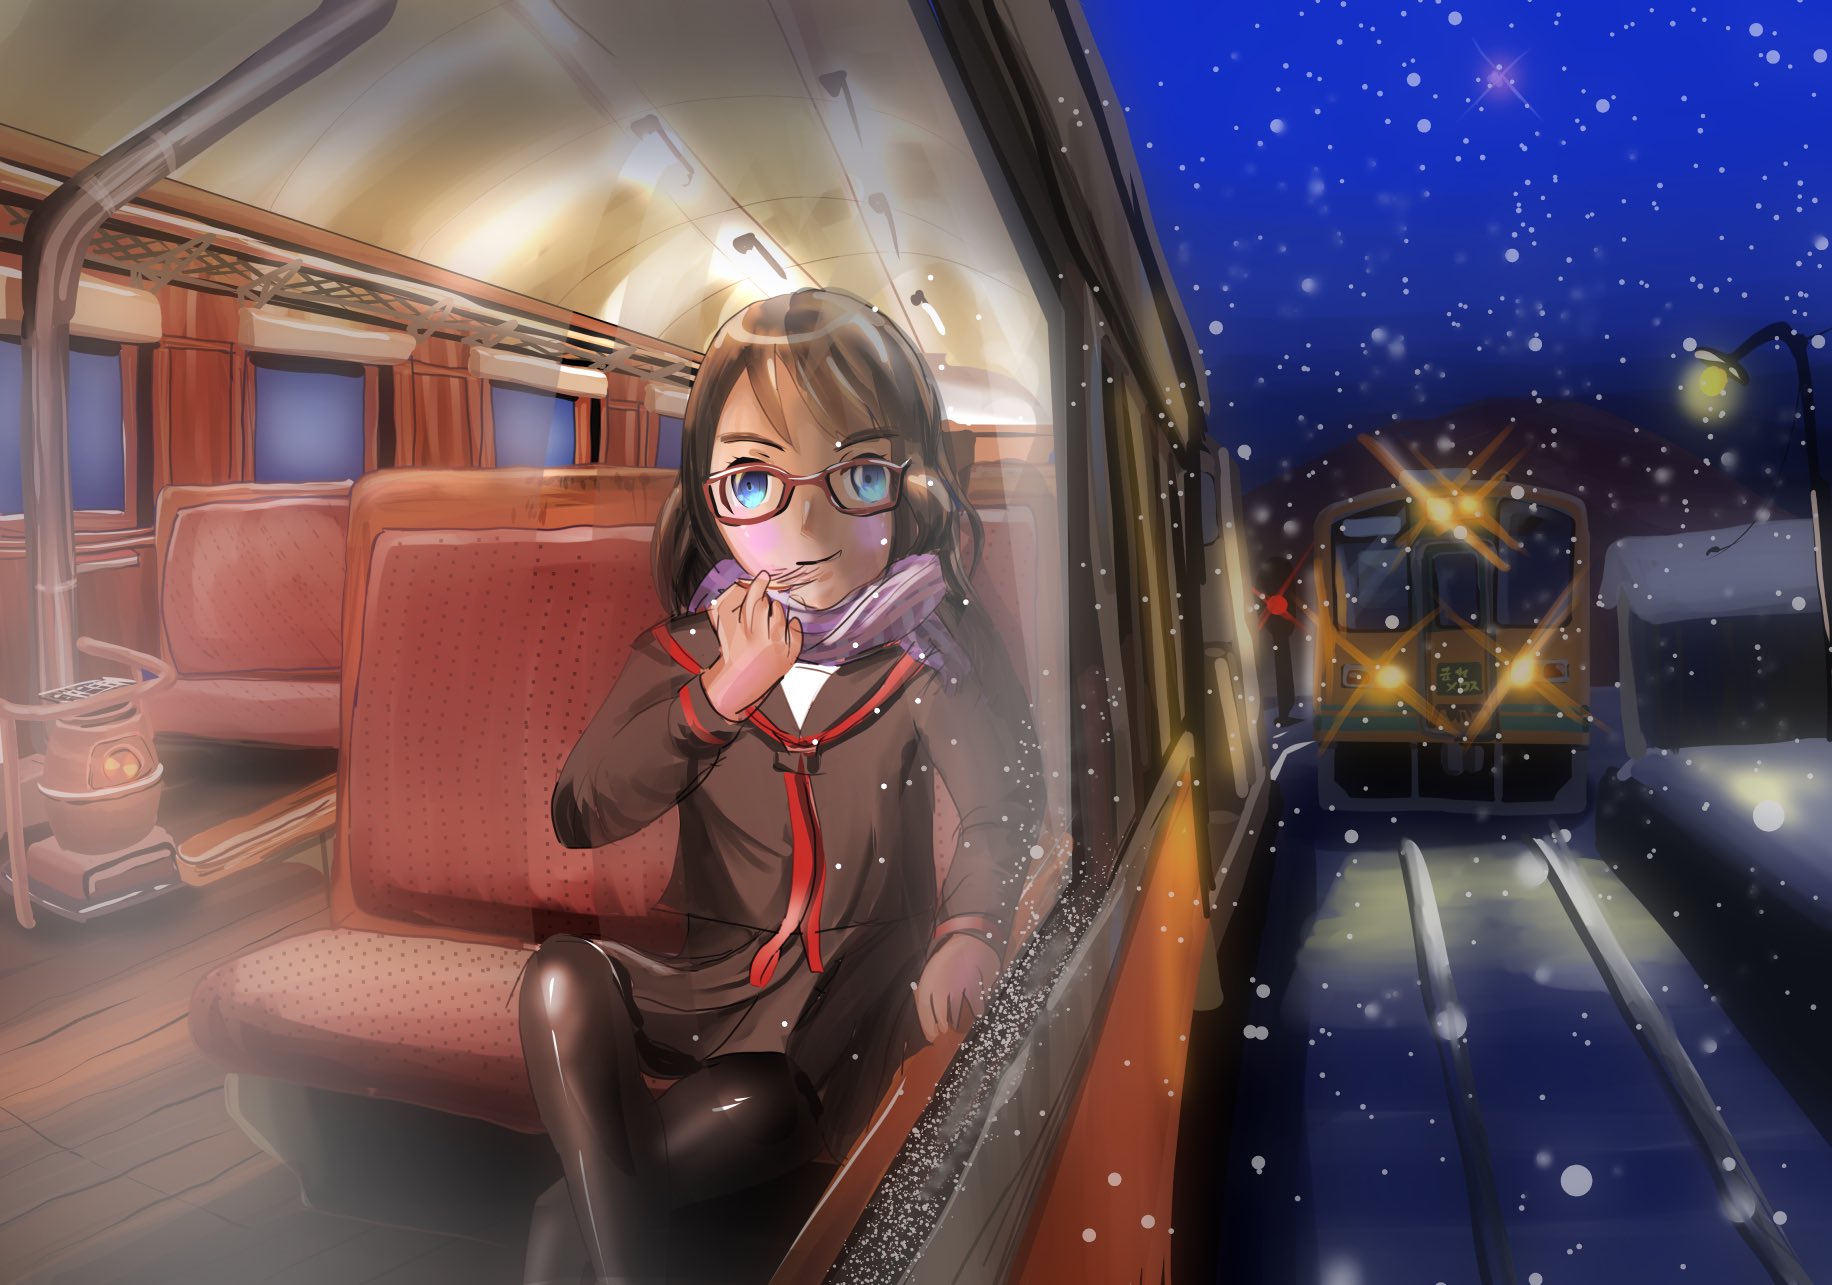 Twitter 上的 ほし 旅イラスト 水中写真 暑すぎるから寒そうなイラストを 津軽鉄道には ストーブ列車 というのがあります 石炭ストーブが 車内にあるのです 絵描きさんと繋がりたい イラスト好きな人と繋がりたい T Co Pkkof7hddh Twitter